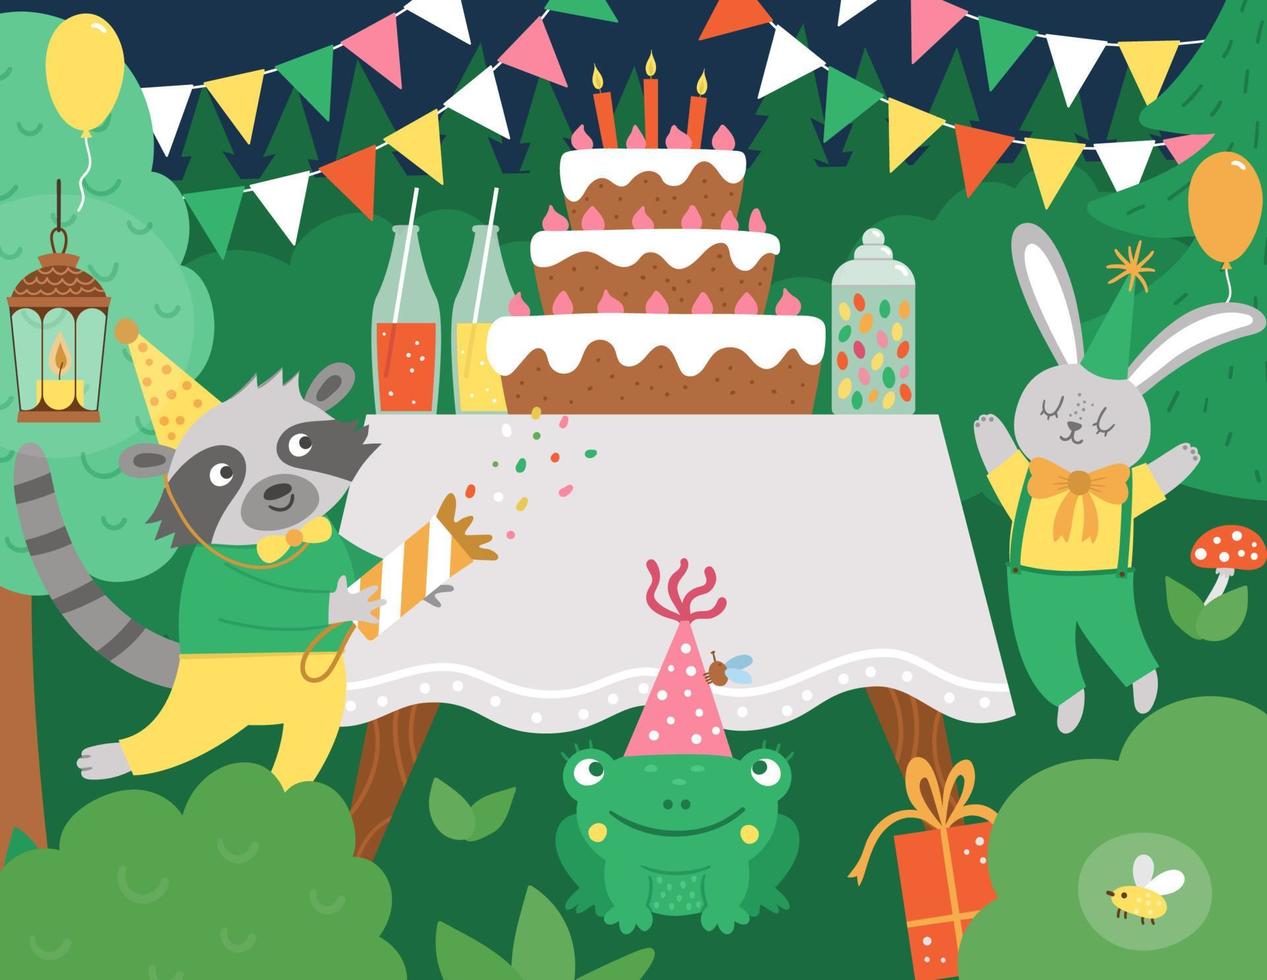 vector fundo de floresta de festa de aniversário com animais fofos e mesa com bolo. cena engraçada do feriado com barra de chocolate, coelho, guaxinim, sapo. ilustração de cenário festivo da floresta à noite.